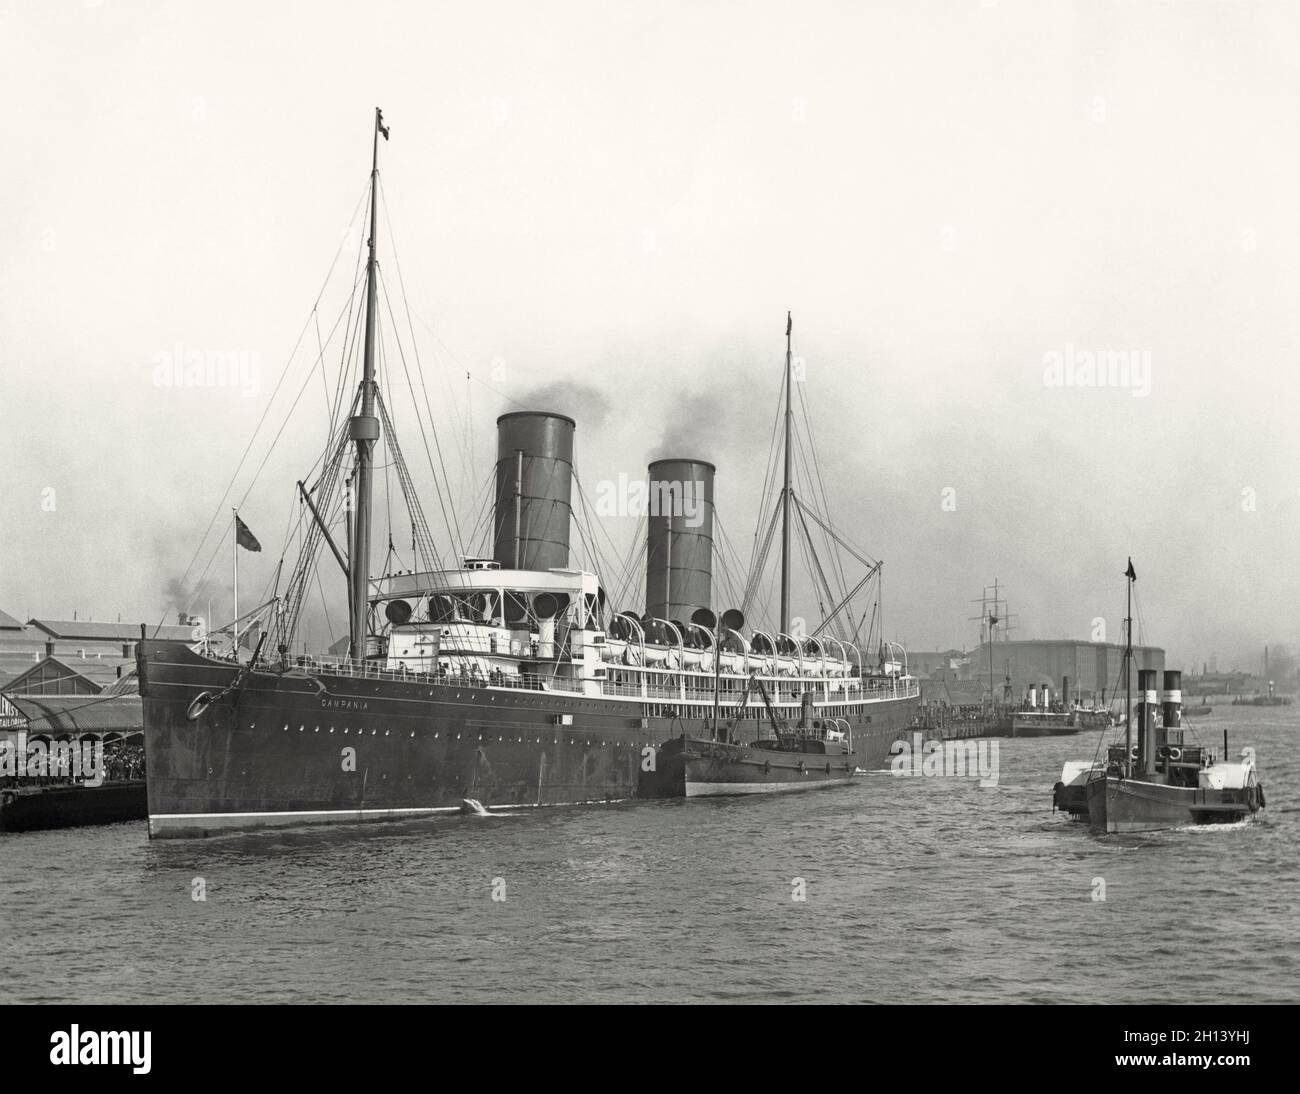 RMS Campania im Hafen in den frühen 1900er Jahren – das Schiff war ein britischer Ozeandampfer im Besitz der Cunard Steamship Line Shipping Co, gebaut in Govan, Schottland. Als sie 1893 in Dienst ging, war sie die größte und schnellste Passagierin und gewann das prestigeträchtige Blue Riband. Ihre letzte Passagierreise war 1914. Kampanien hatte eine Verschnaufpause, als sie verschrottet wurde. Die britische Admiralität verwandelte sie in einen bewaffneten Handelskreuzer, der Wasserflugzeuge transportieren konnte. HMS Campania sah wenig wie ihre ursprüngliche Konfiguration aus. Sie diente bis 1918, als sie im Firth of Forth sank – einem alten Foto aus dem 19. Jahrhundert Stockfoto